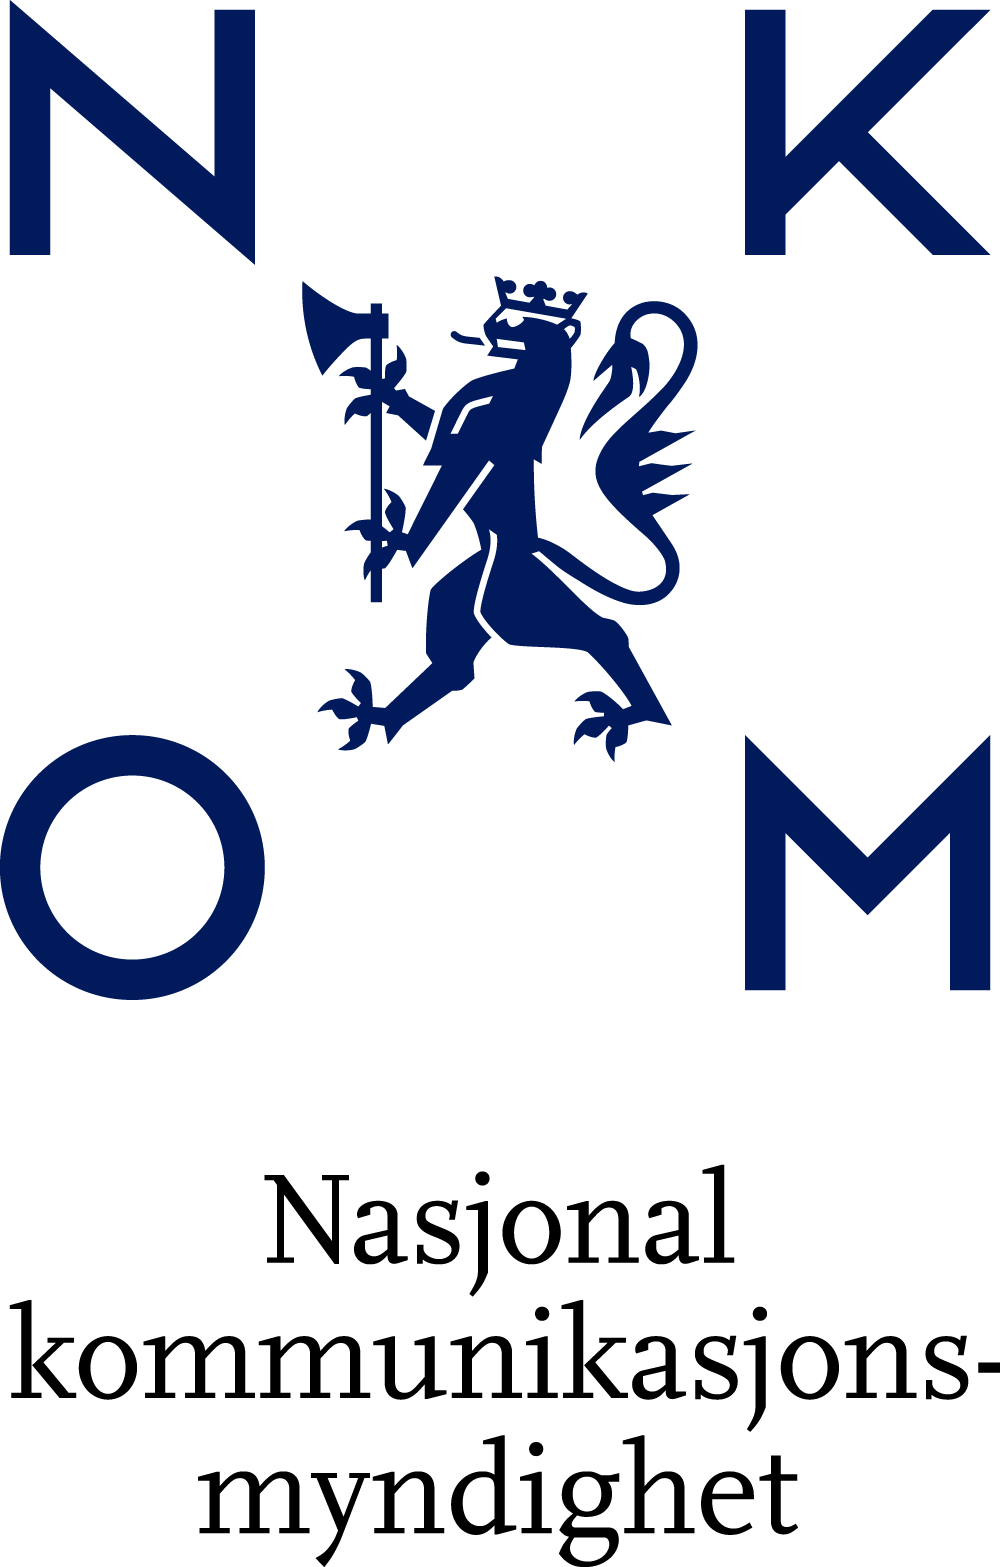 上海标志设计公司尚略广告分享：挪威Norwegian通信管理局标志设计品牌设计1